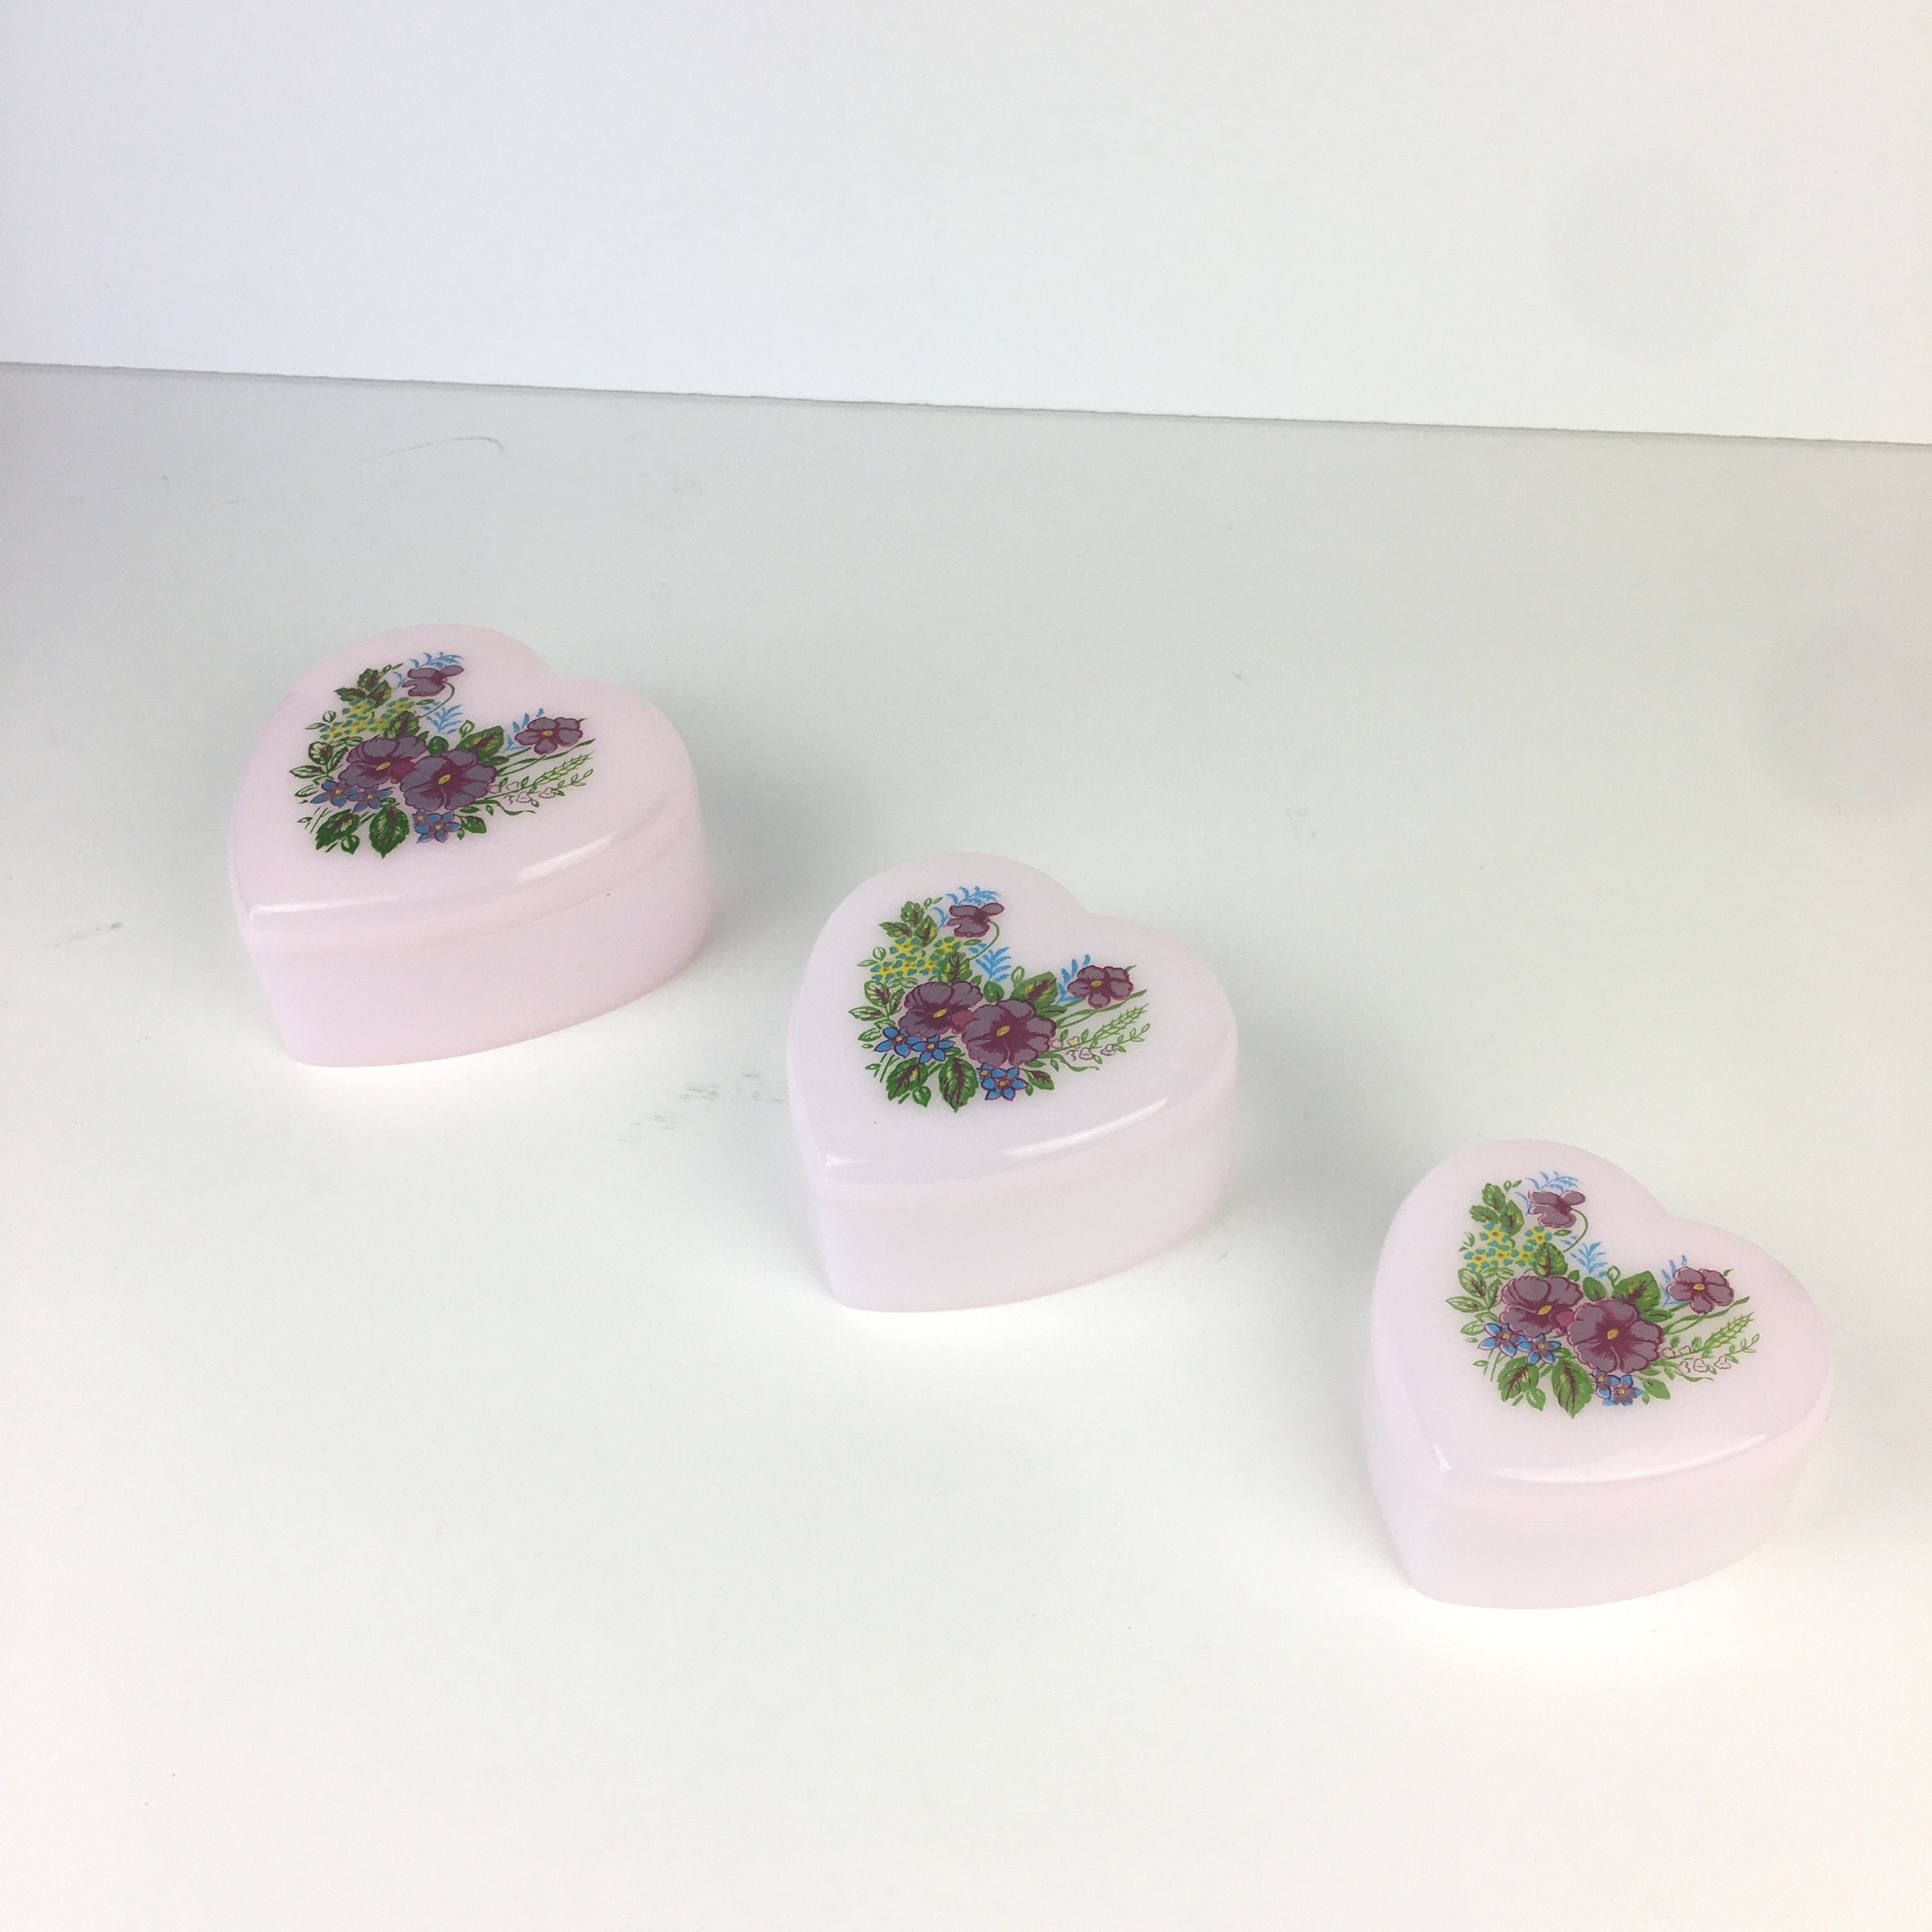 Vtg Plastic Nesting Hearts Trinket Boxes Set of 3 Pale Pink Floral